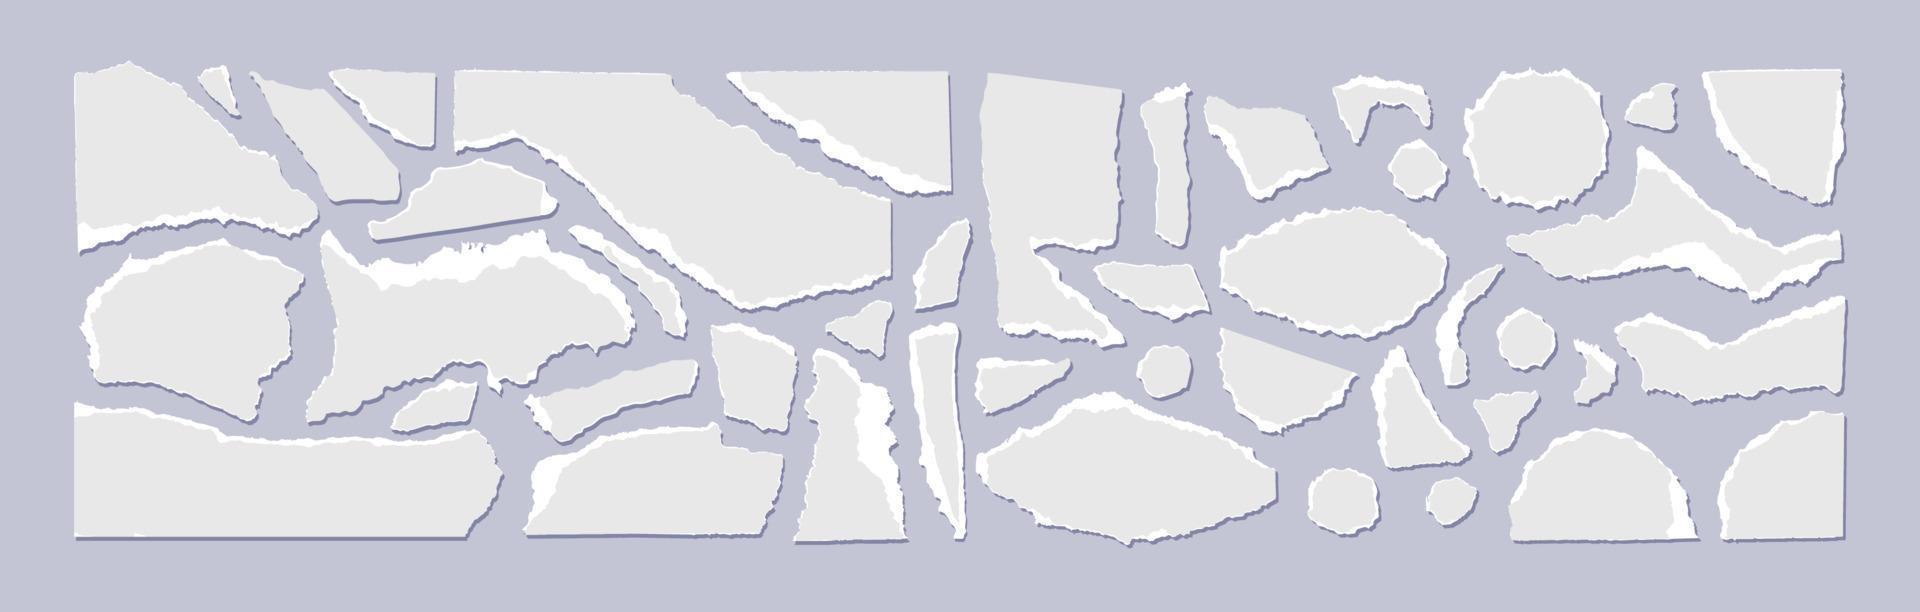 uppsättning av trasig grå papper med en vit kant isolerat på en grå bakgrund. vektor illustration av små skrot av trasig papper av annorlunda storlekar och former. smulad färgad bitar av sidor.